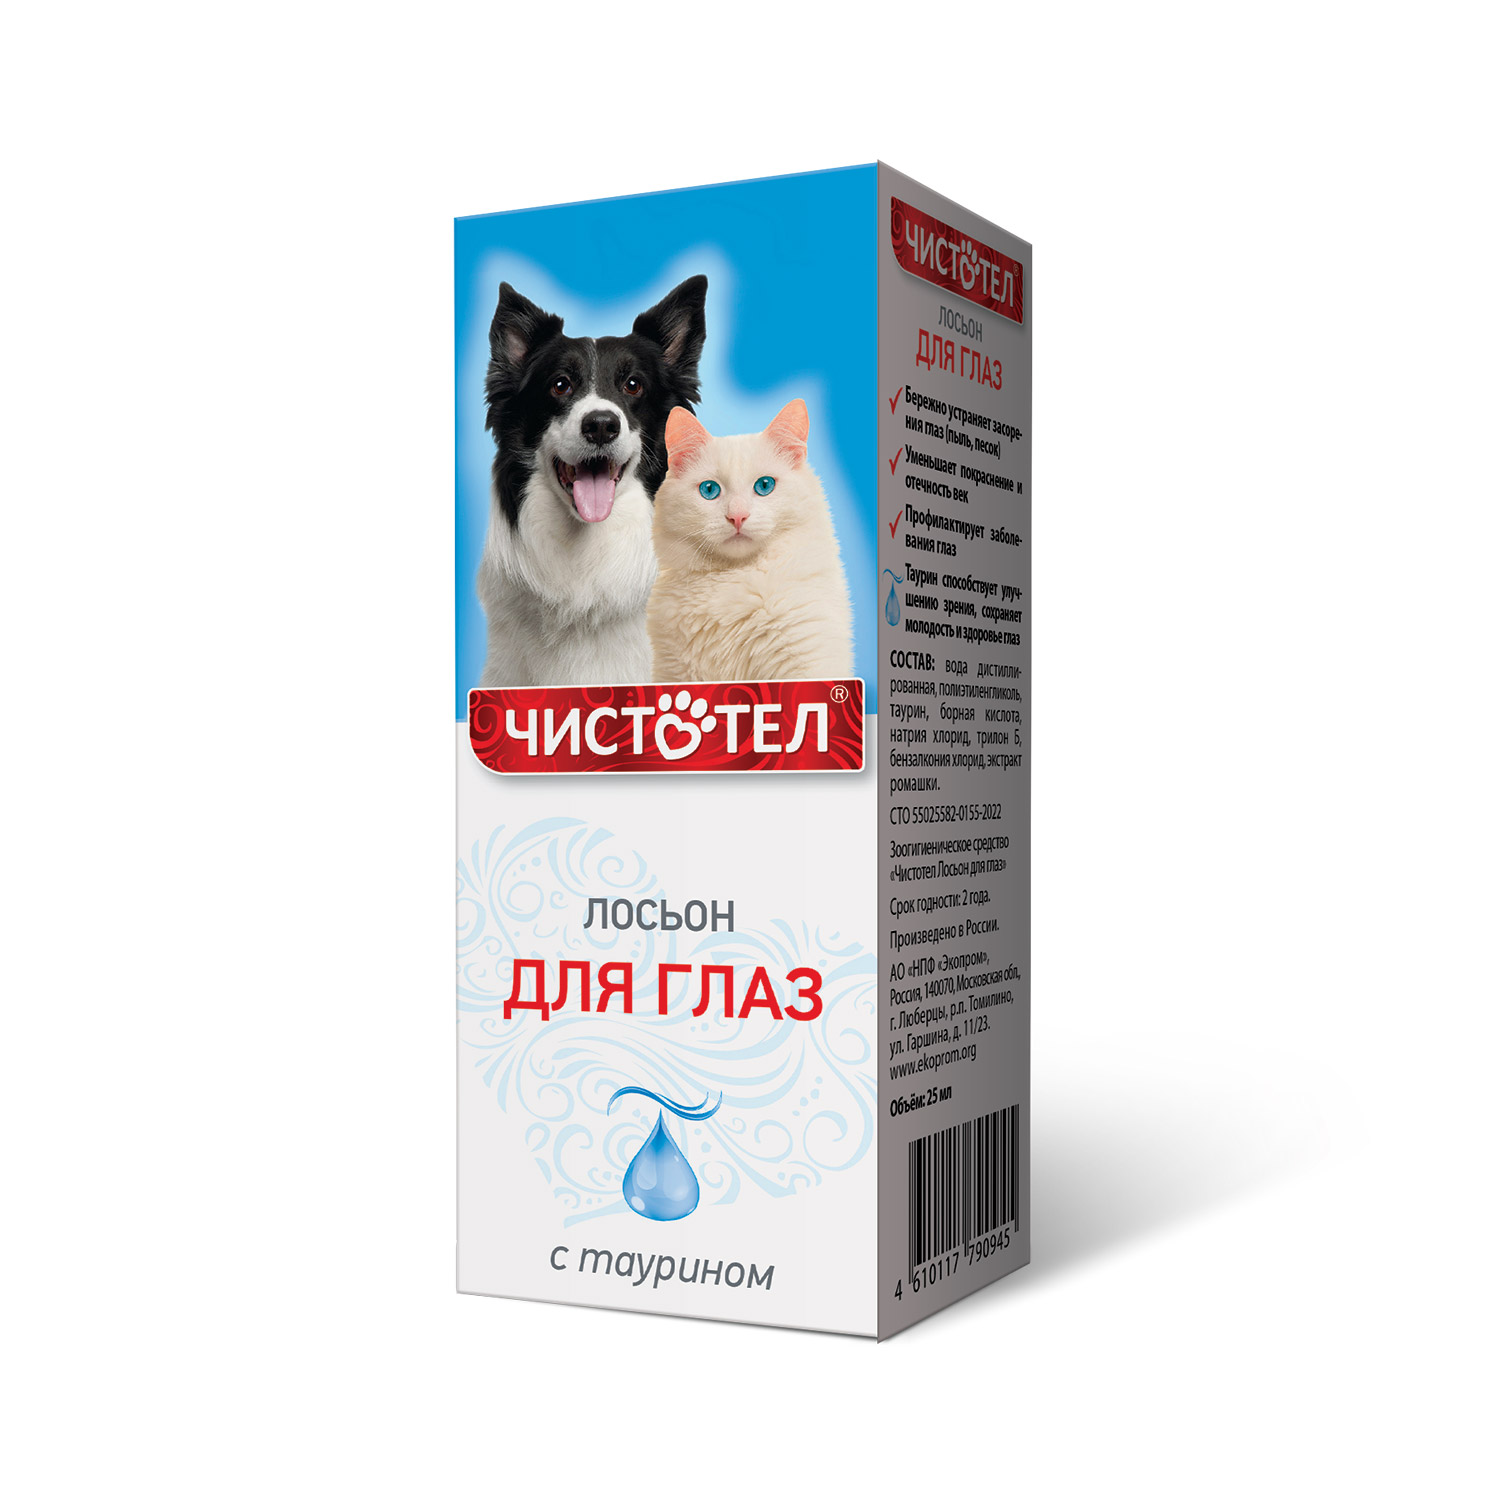 Лосьон для глаз для собак и кошек Чистотел с таурином, 25мл